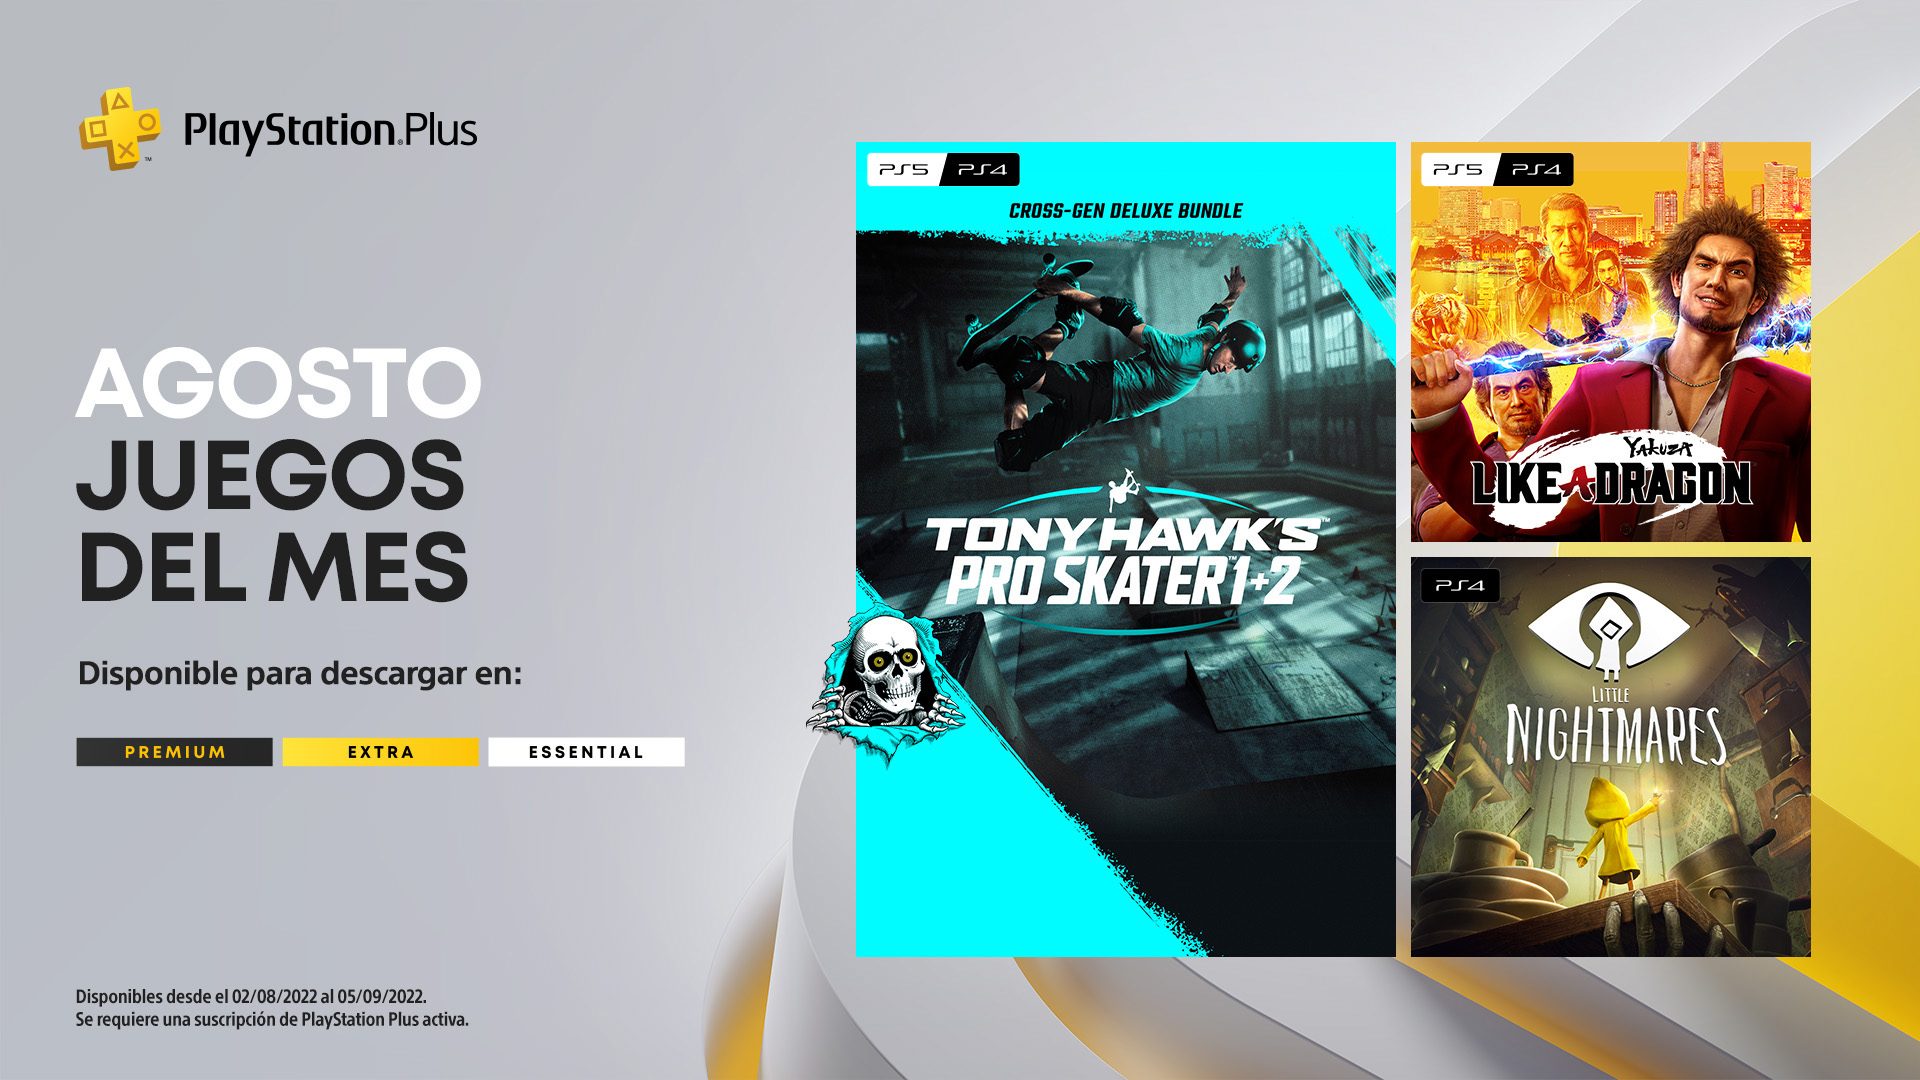 Juegos mensuales de PlayStation Plus y catálogo de juegos de septiembre